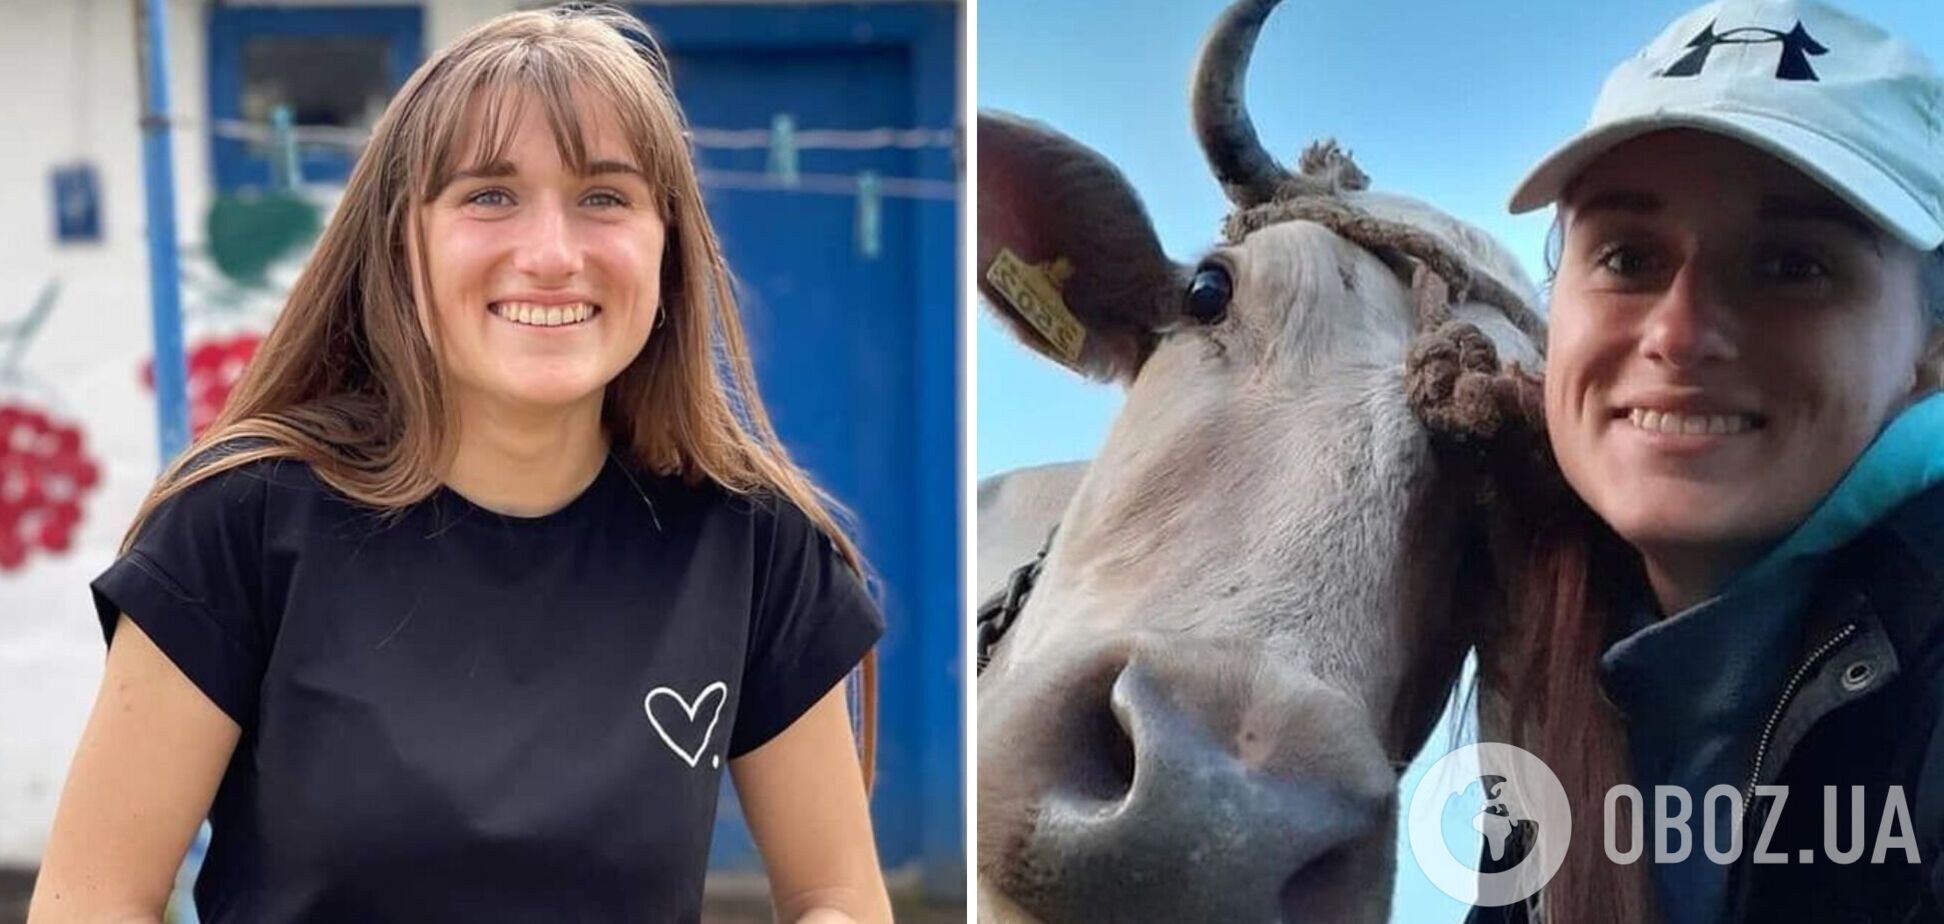 Сільська блогерка з 'бешеною конякою' закликала українців робити селфі з коровами